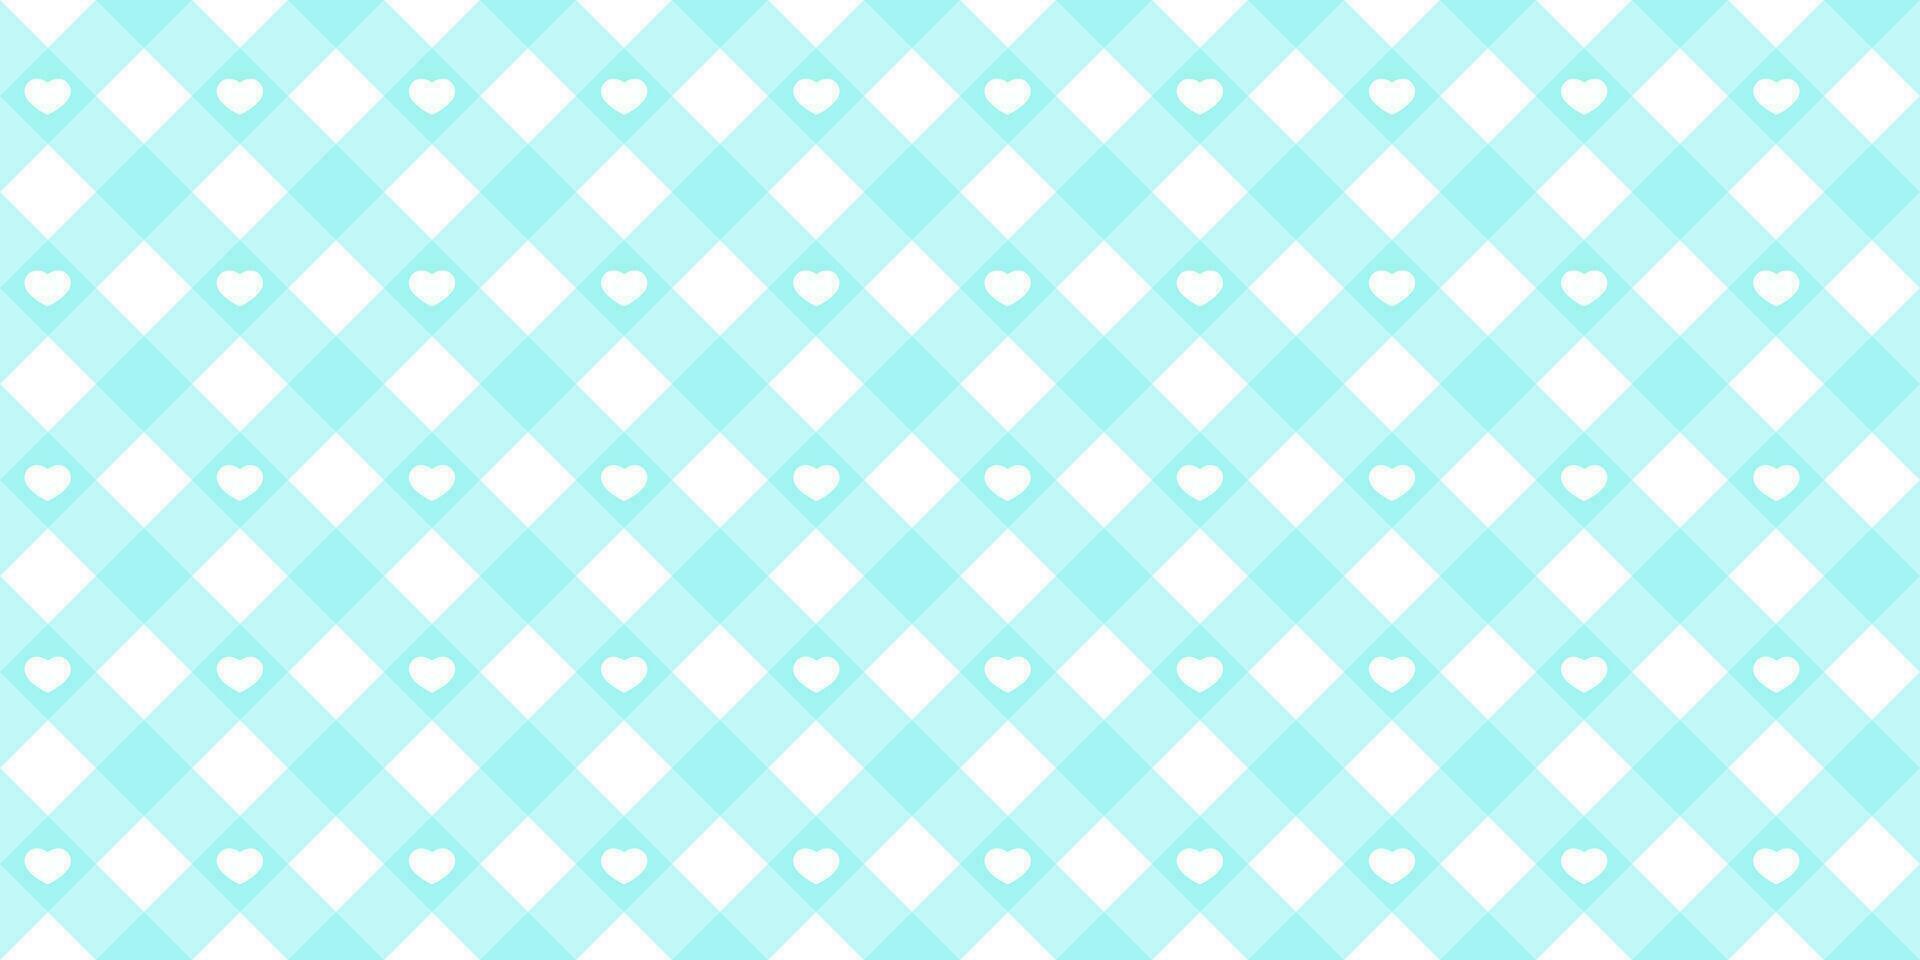 gingham diagonal sömlös mönster i blå pastell Färg. vichy pläd design för påsk Semester textil- dekorativ. vektor rutig mönster för tyg - picknick filt, bordsduk, klänning, servett.